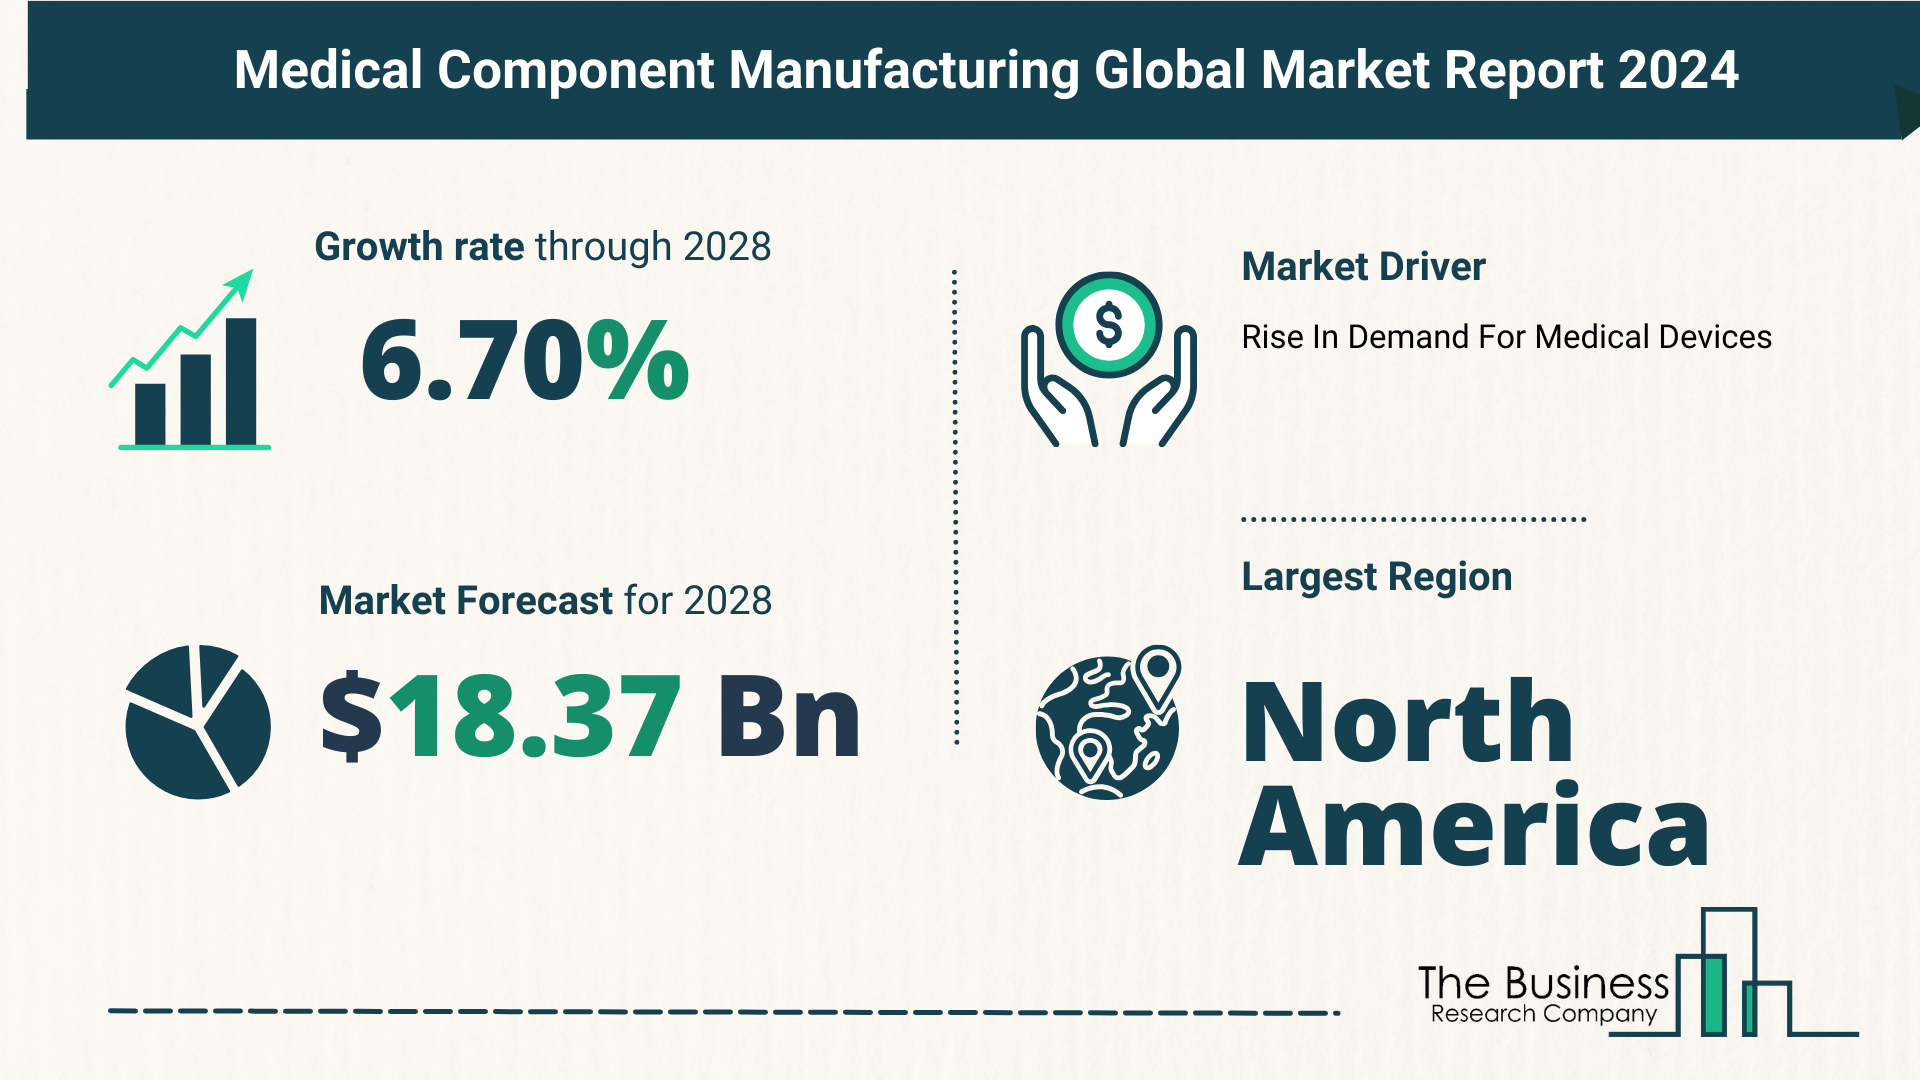 Global Medical Component Manufacturing Market